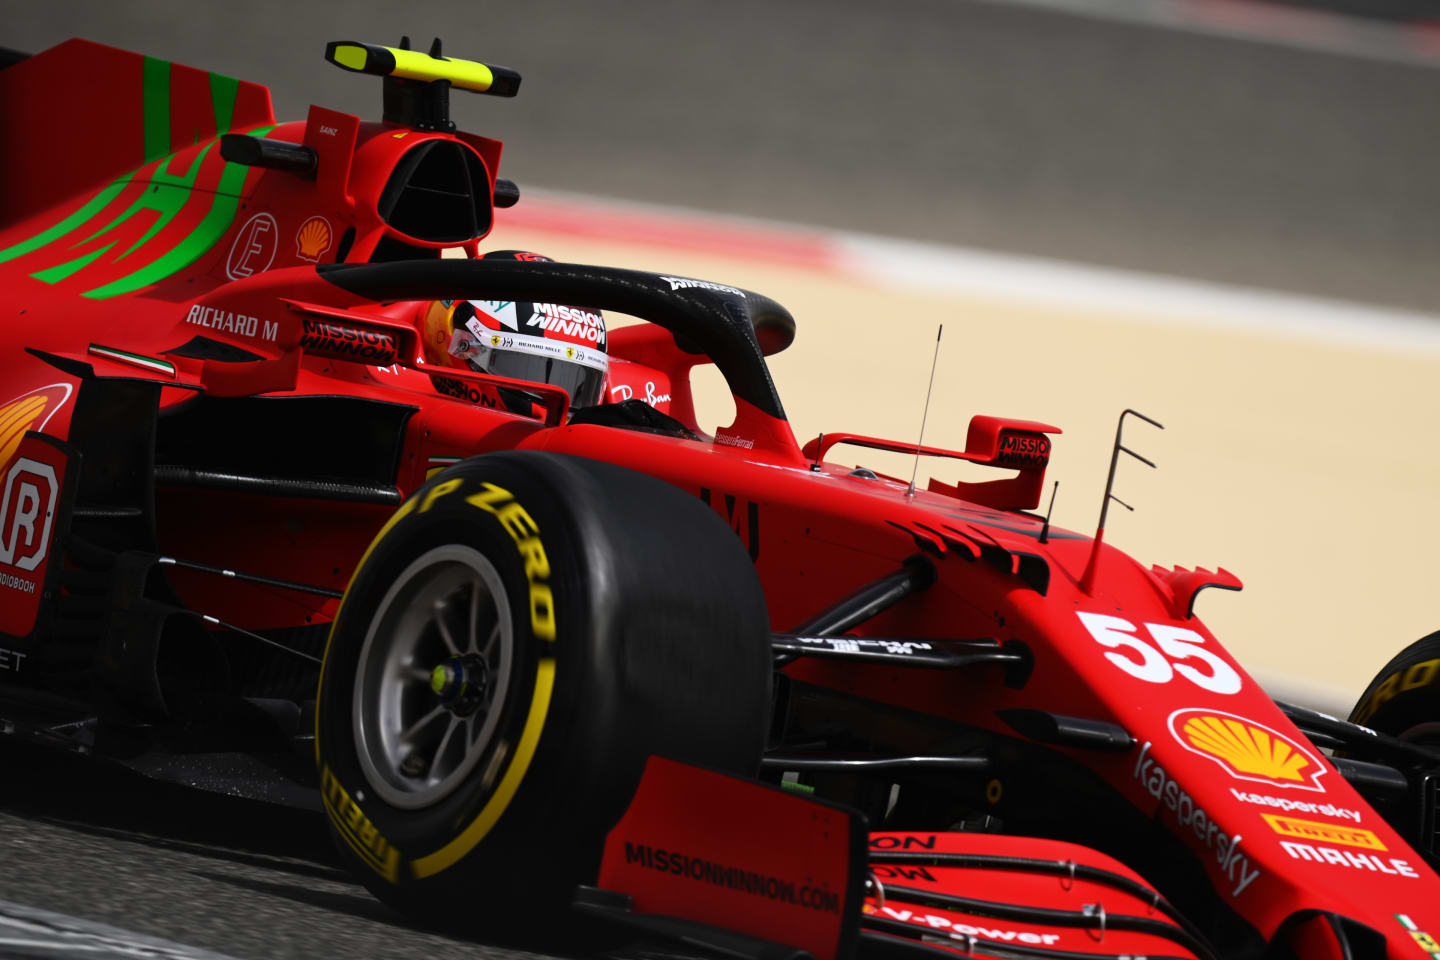 Carlos Sainz at the wheel for Ferrari